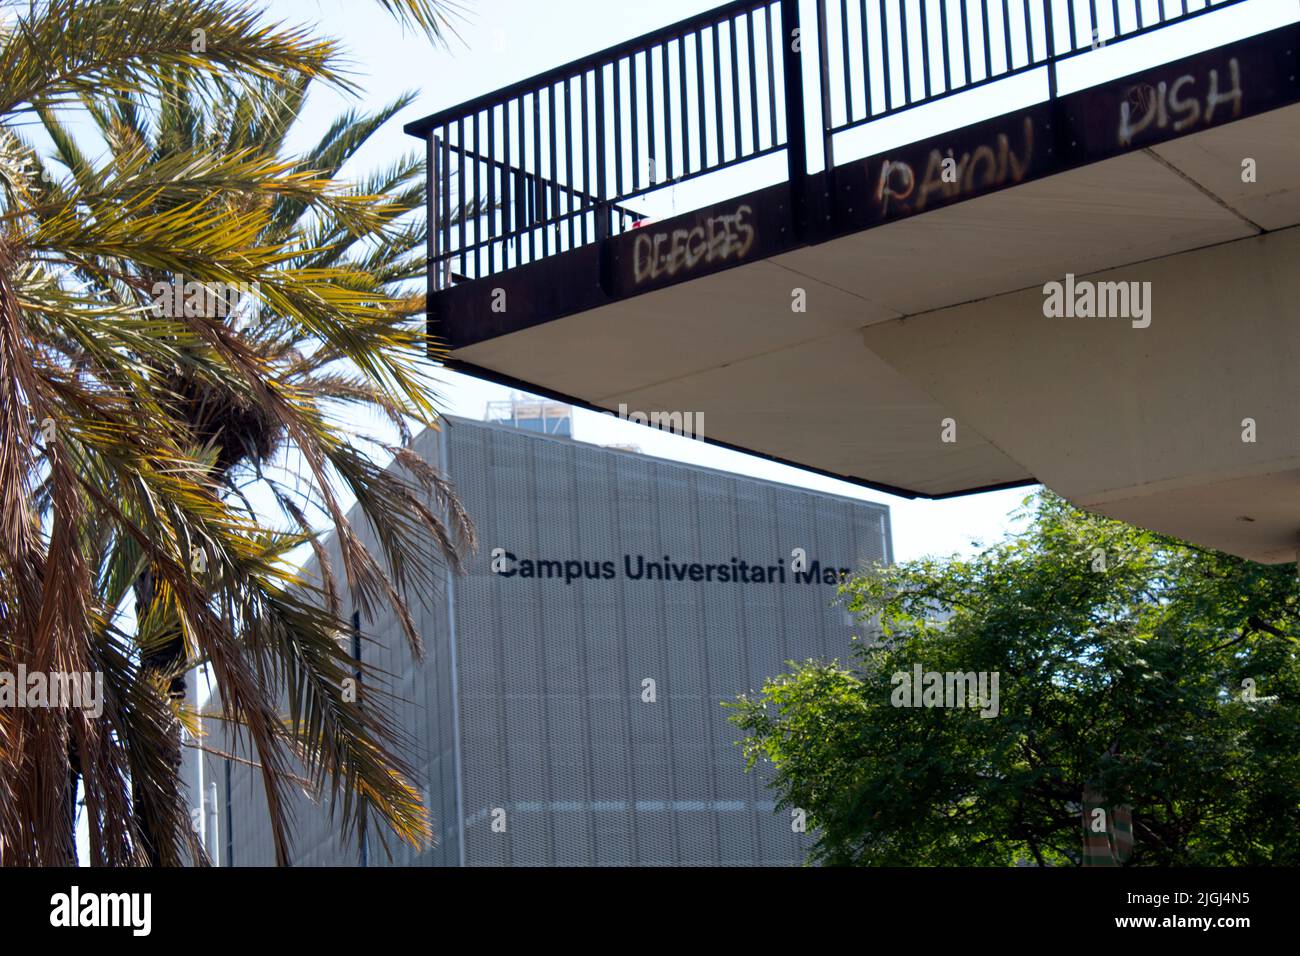 Campus Universitario Mar, Université publique de Barcelone, Espagne Banque D'Images